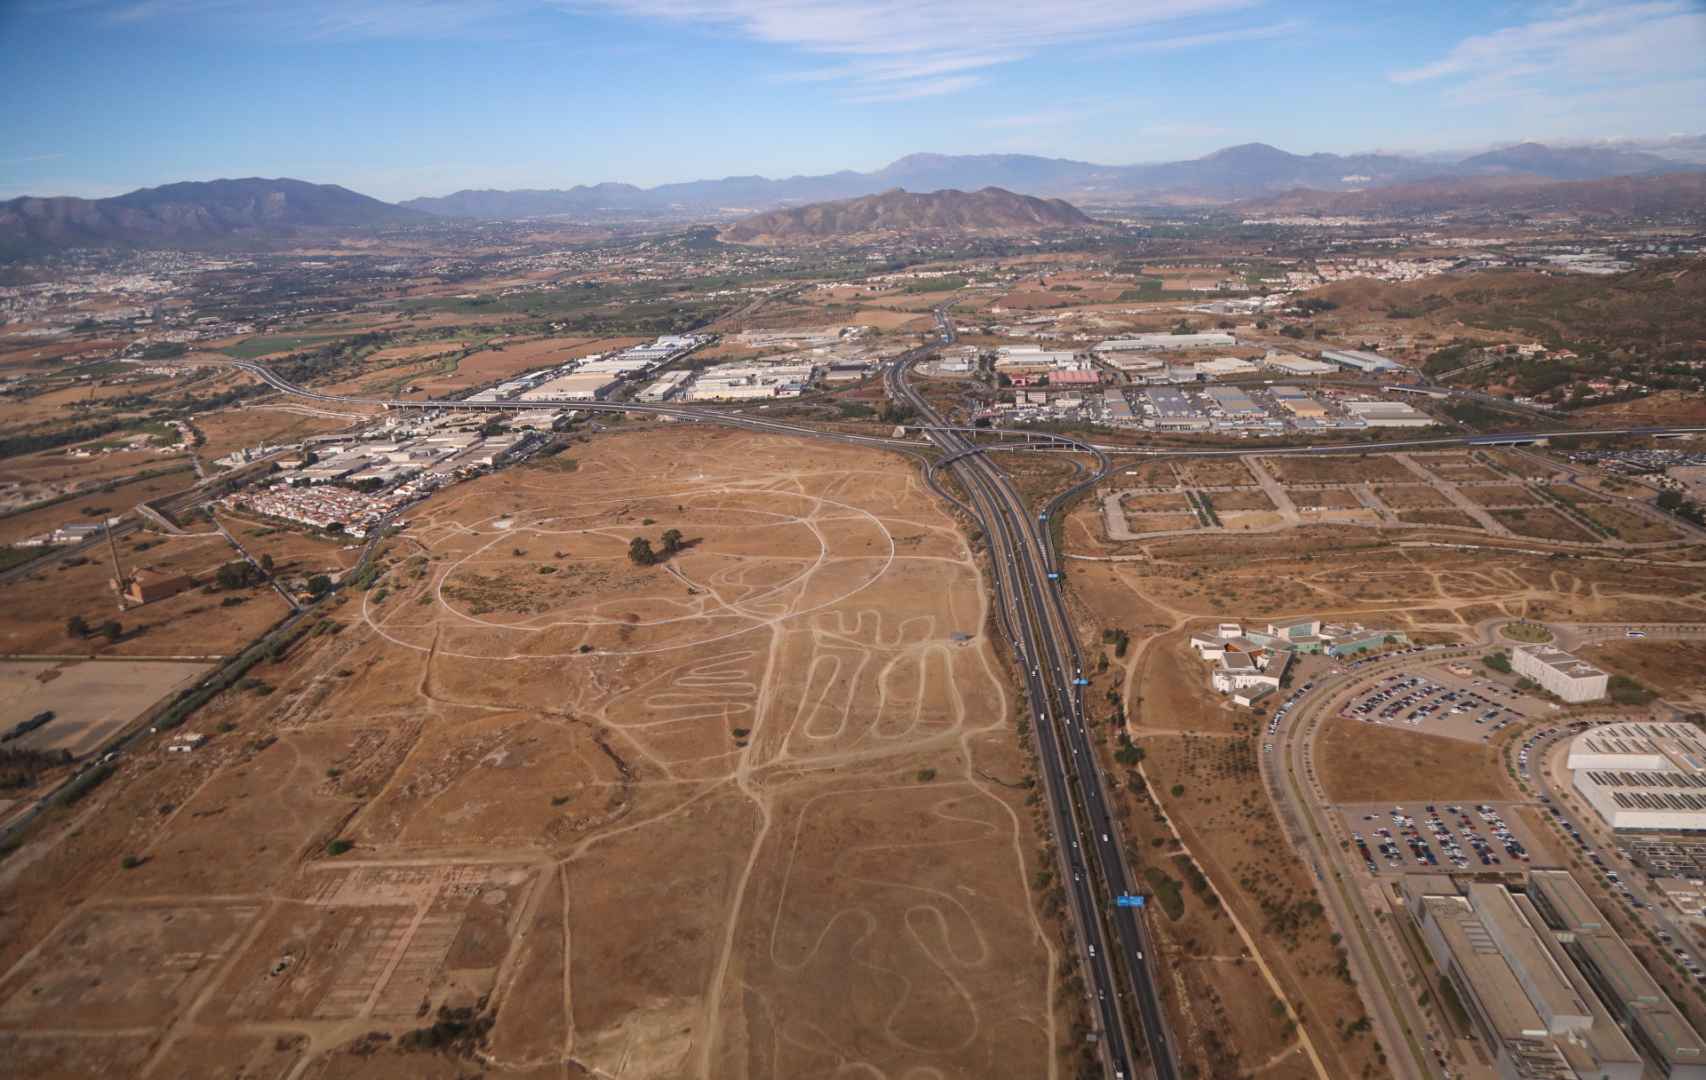 Vista aérea de los terrenos donde se desarrollará la Expo de 2027.